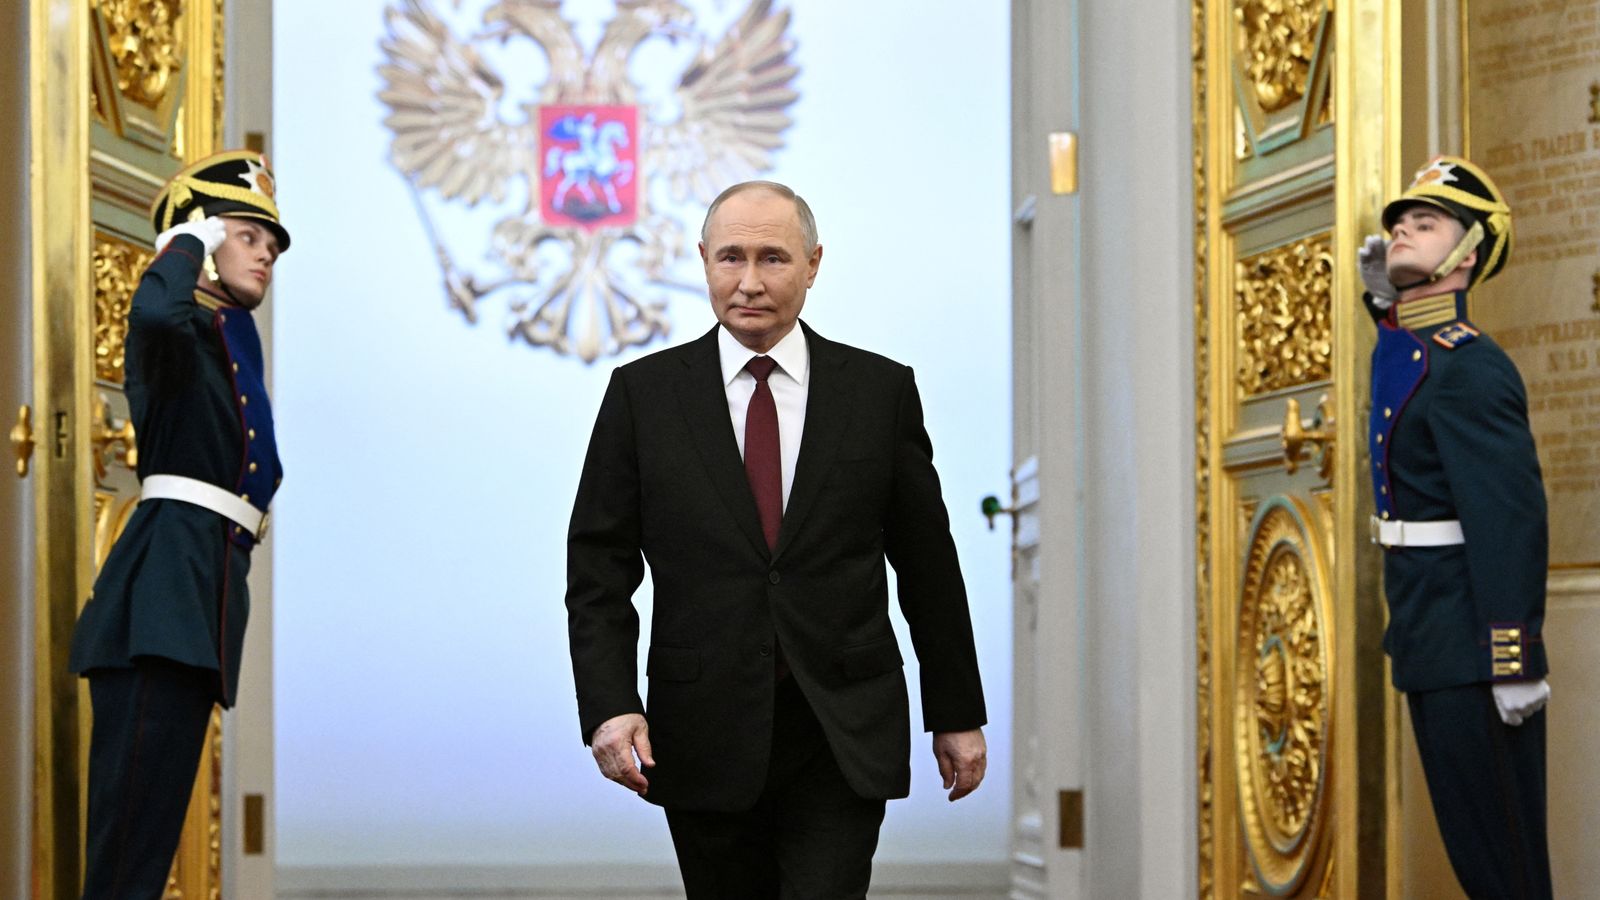 ウラジーミル・プーチン大統領、5回目の就任式で「祖国のために戦った」兵士たちに感謝 | 世界のニュース